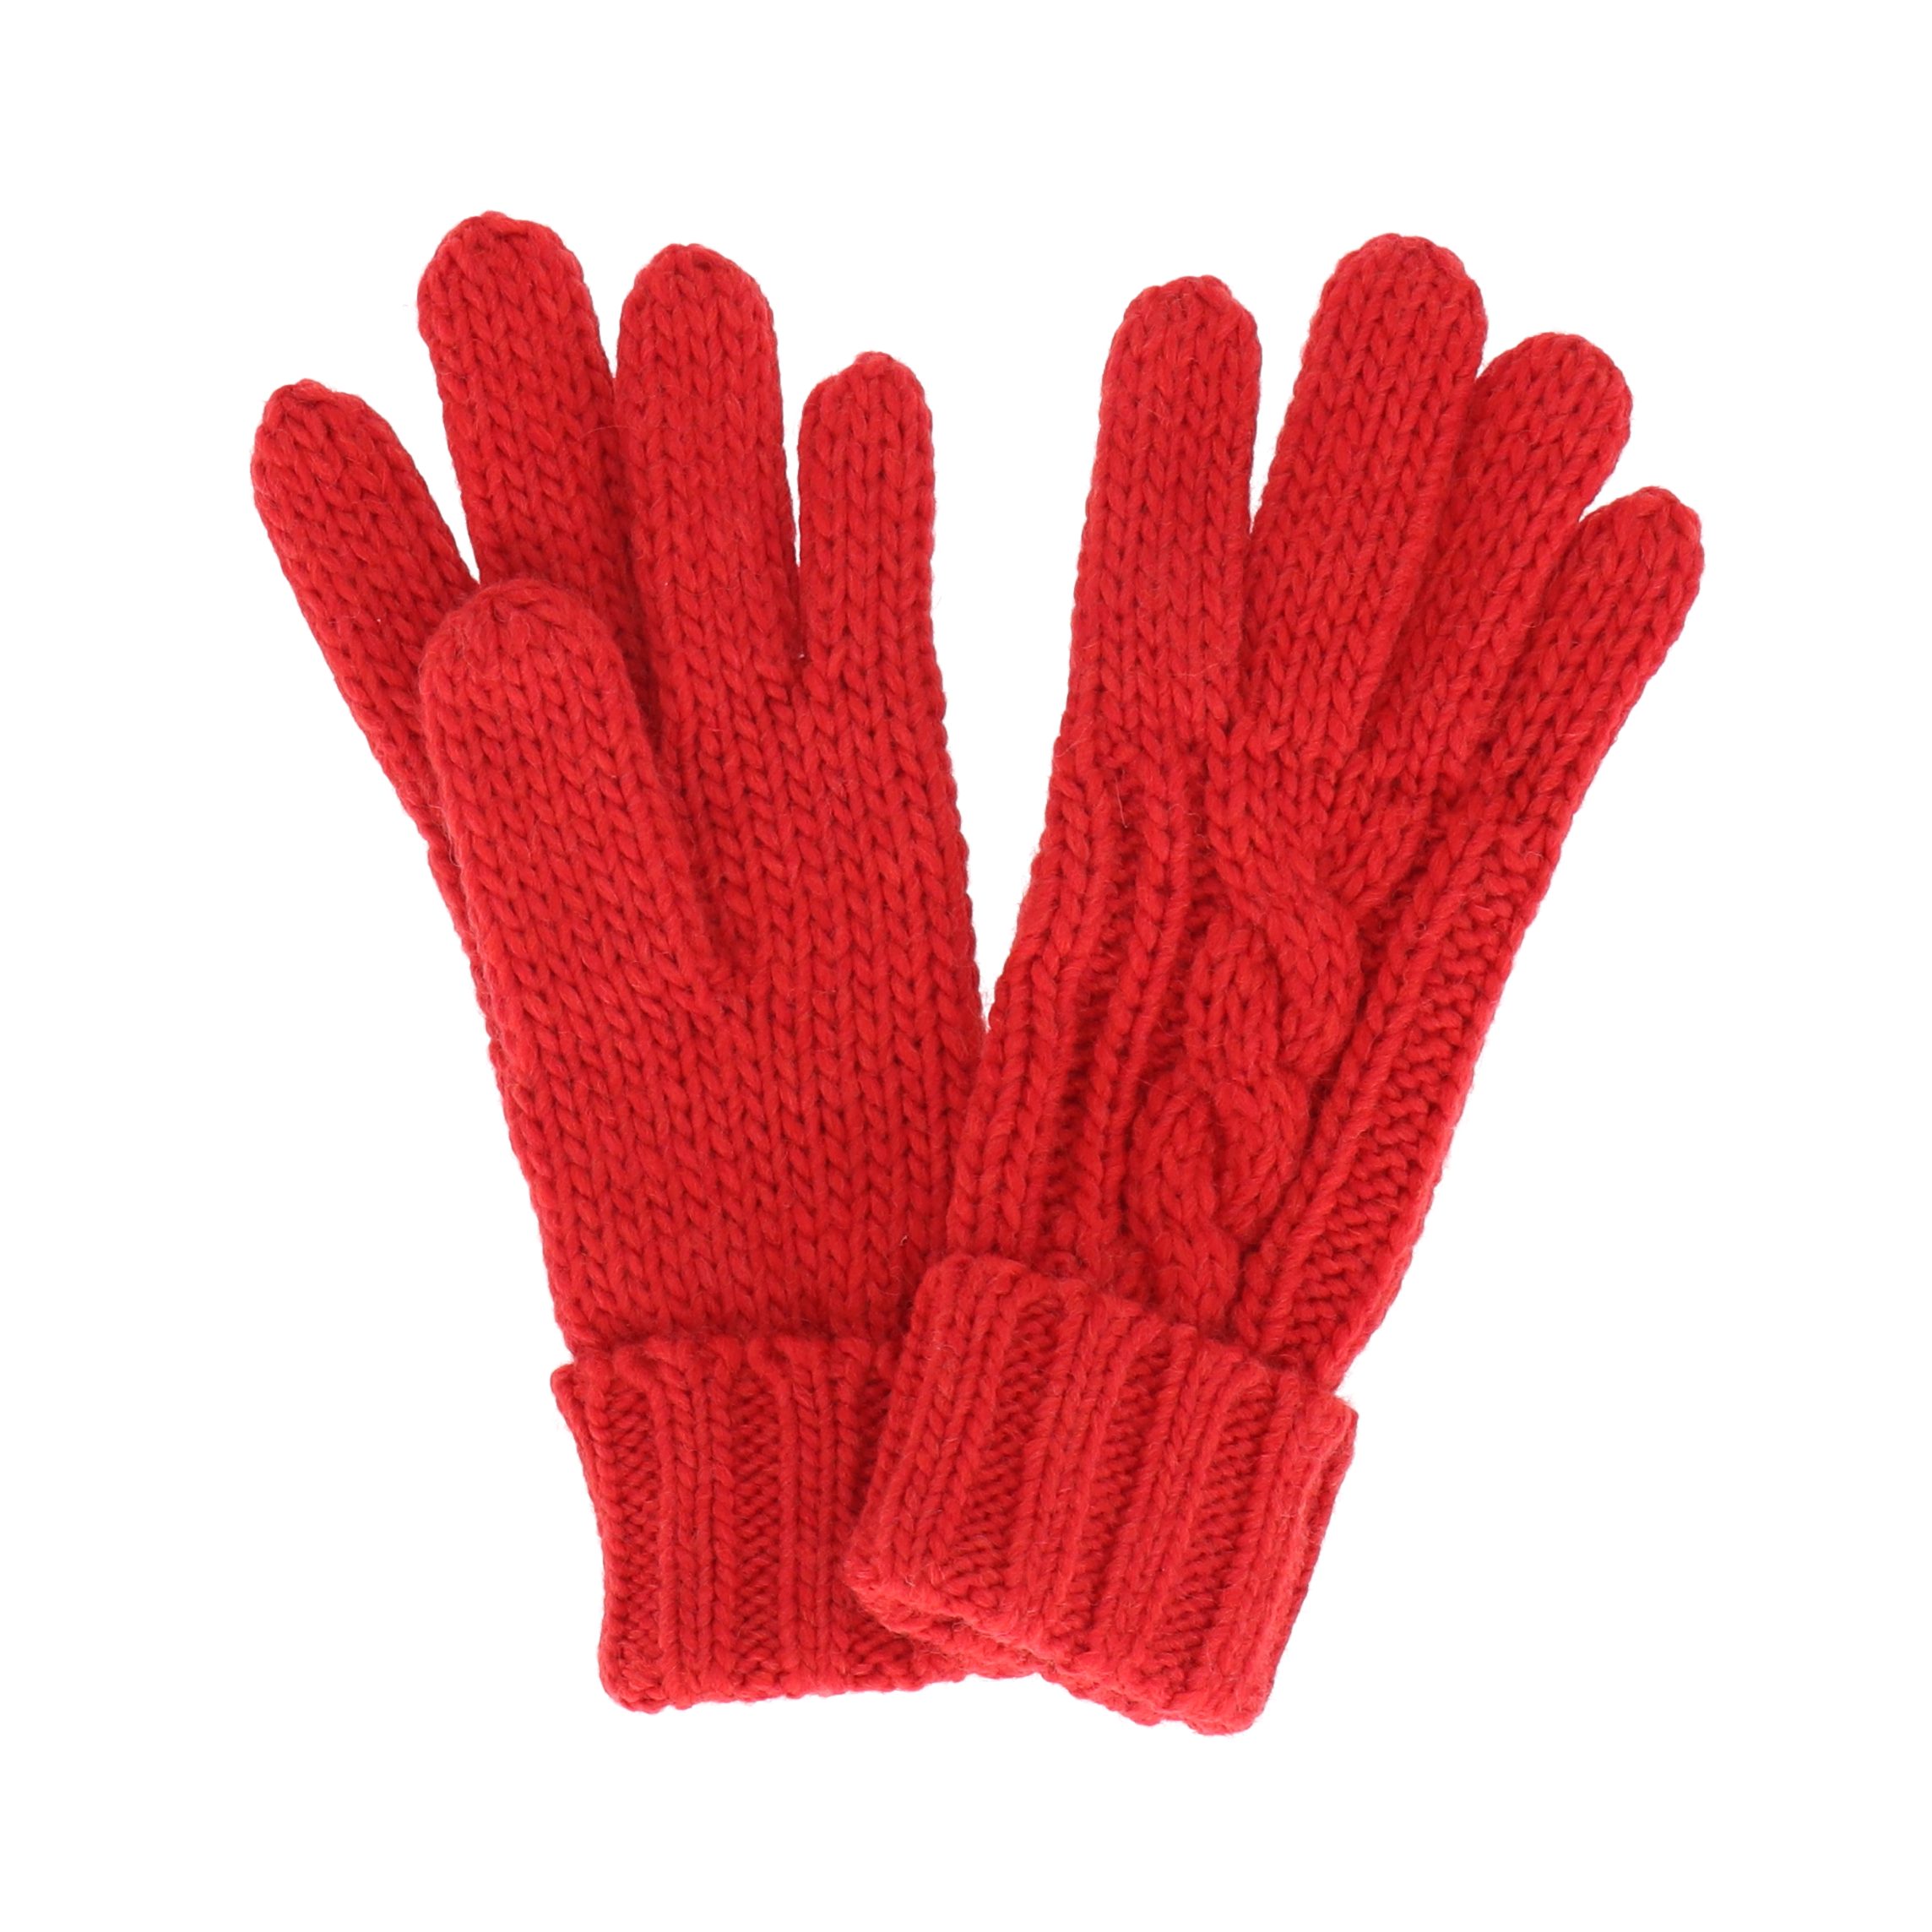 Strickhandschuhe mit Woll- rot Accessoires und Zopfmuster Stickhandschuh Alpaka-Anteil halsüberkopf mit